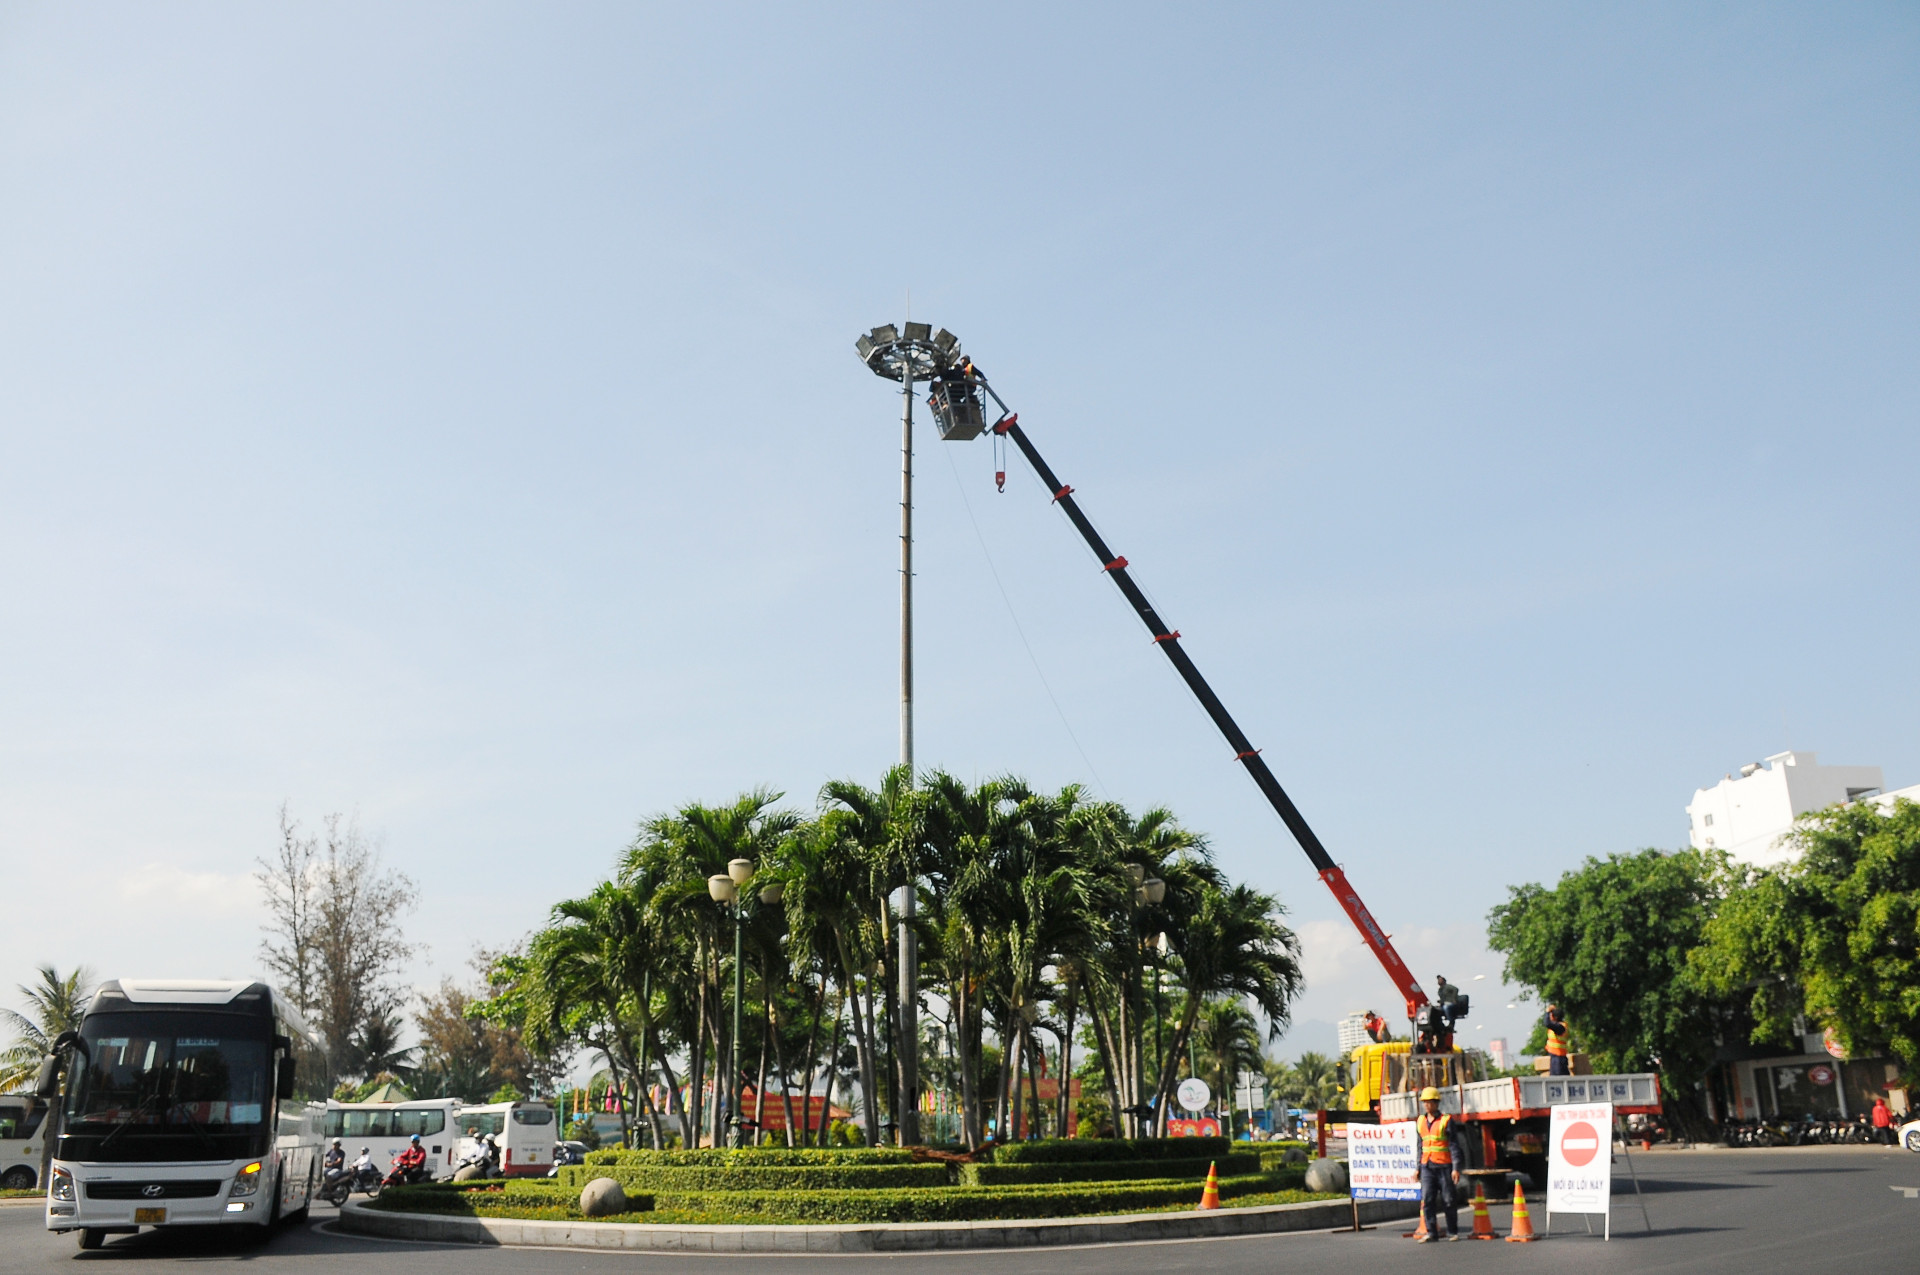 Kiểm tra hệ thống đèn chiếu sáng ở khu vực cầu Trần Phú.

